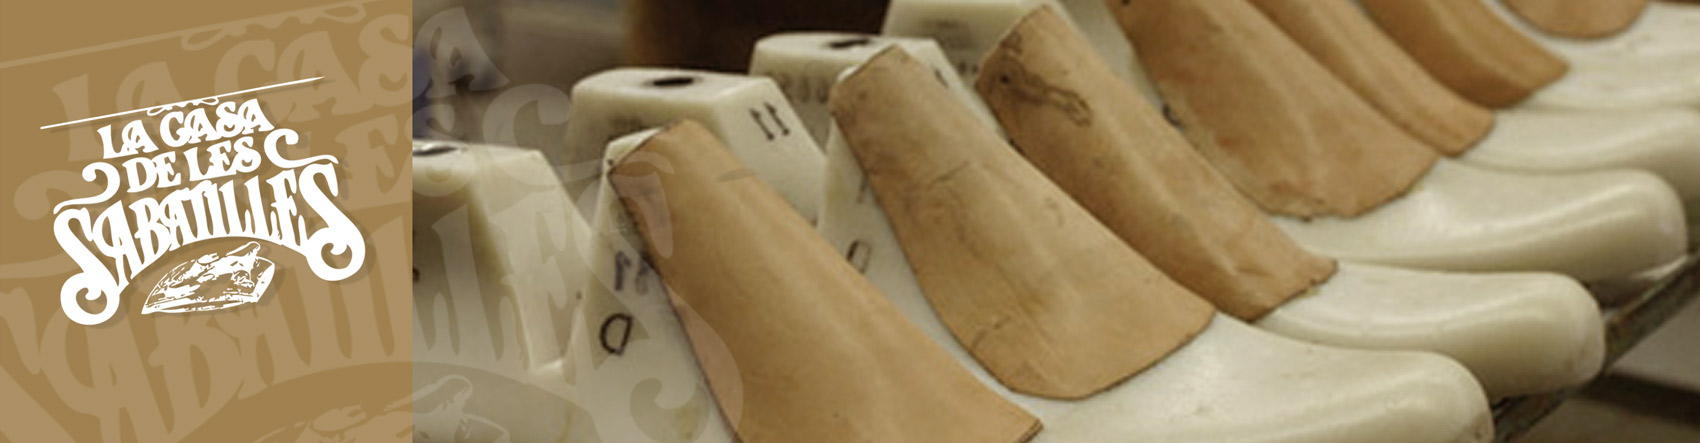 Zapatillas Nordikas, calzados y espardeñas de la marca Nordikas, Outlet y precios rebajados